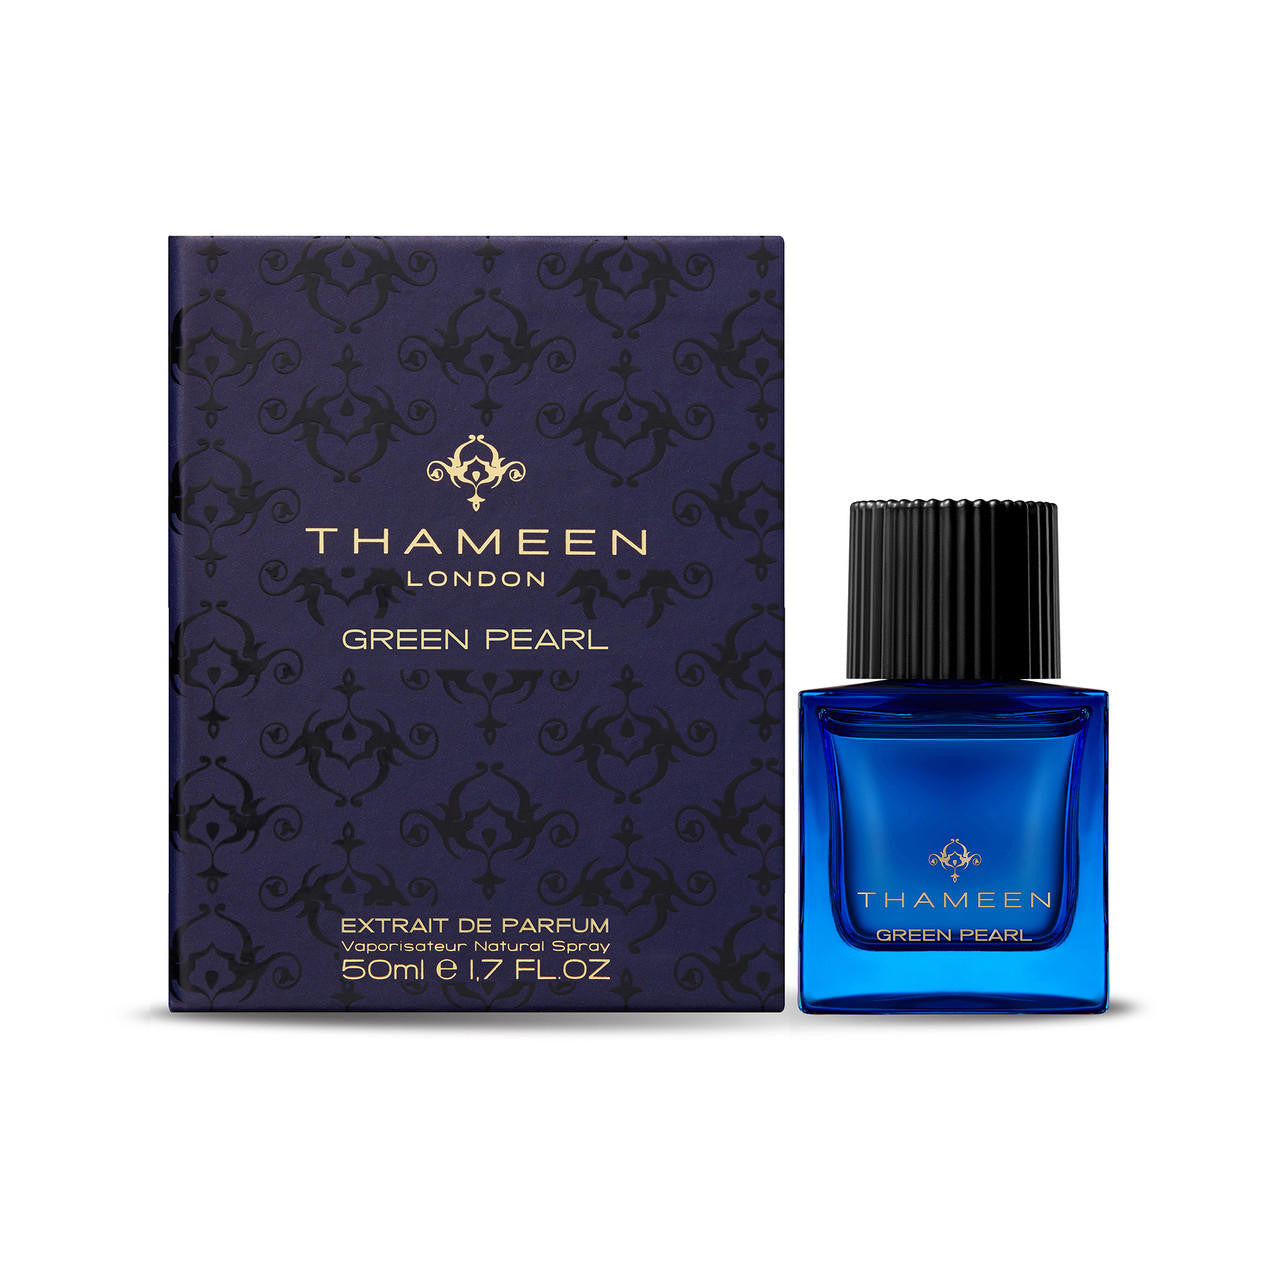  Thameen Green Pearl Extrait de Parfum 